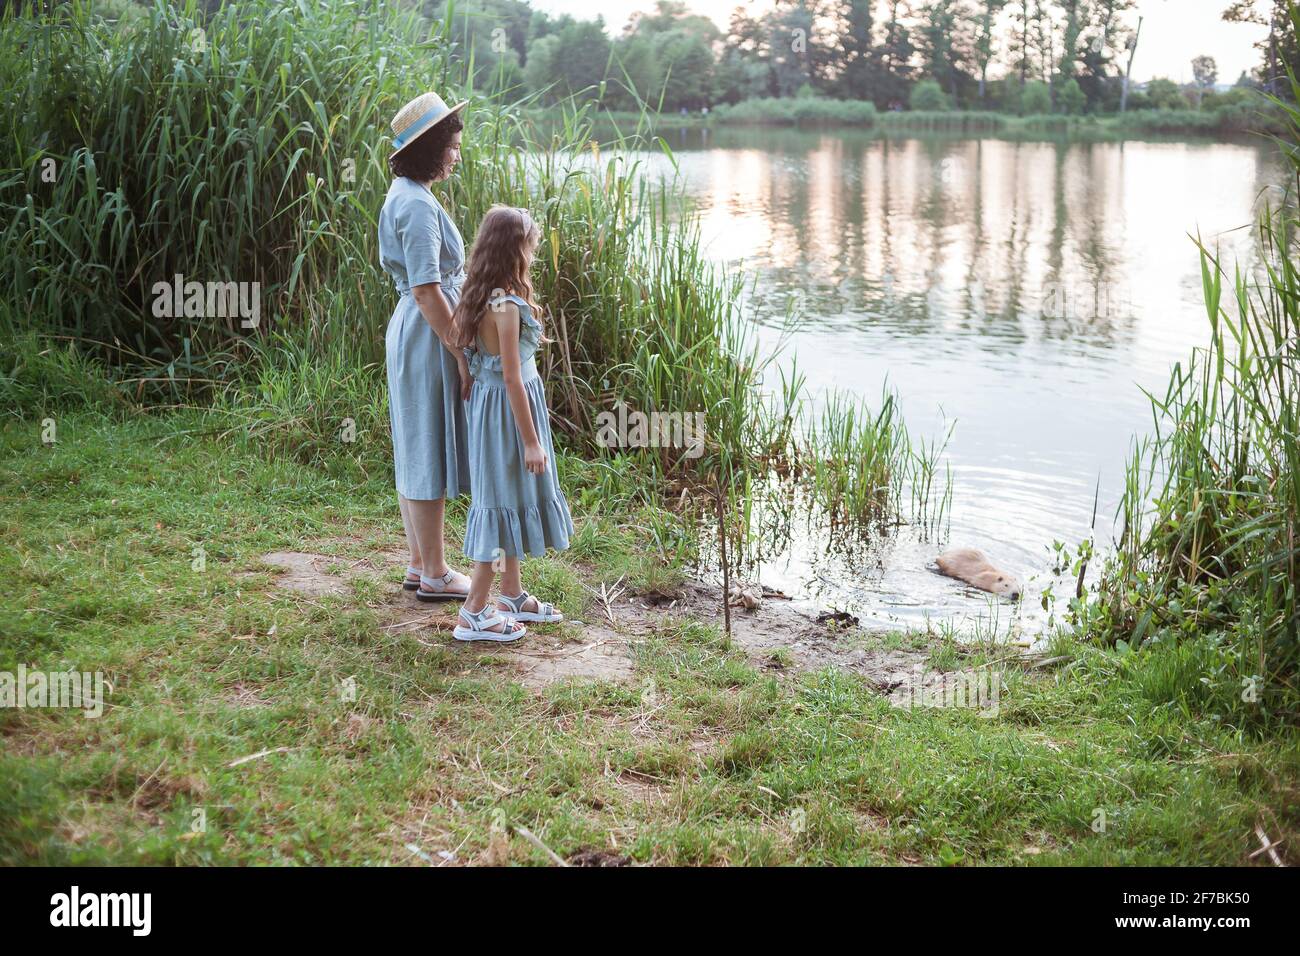 Una ragazza si trova sulla riva del lago e. guarda la nutria nell'acqua Foto Stock